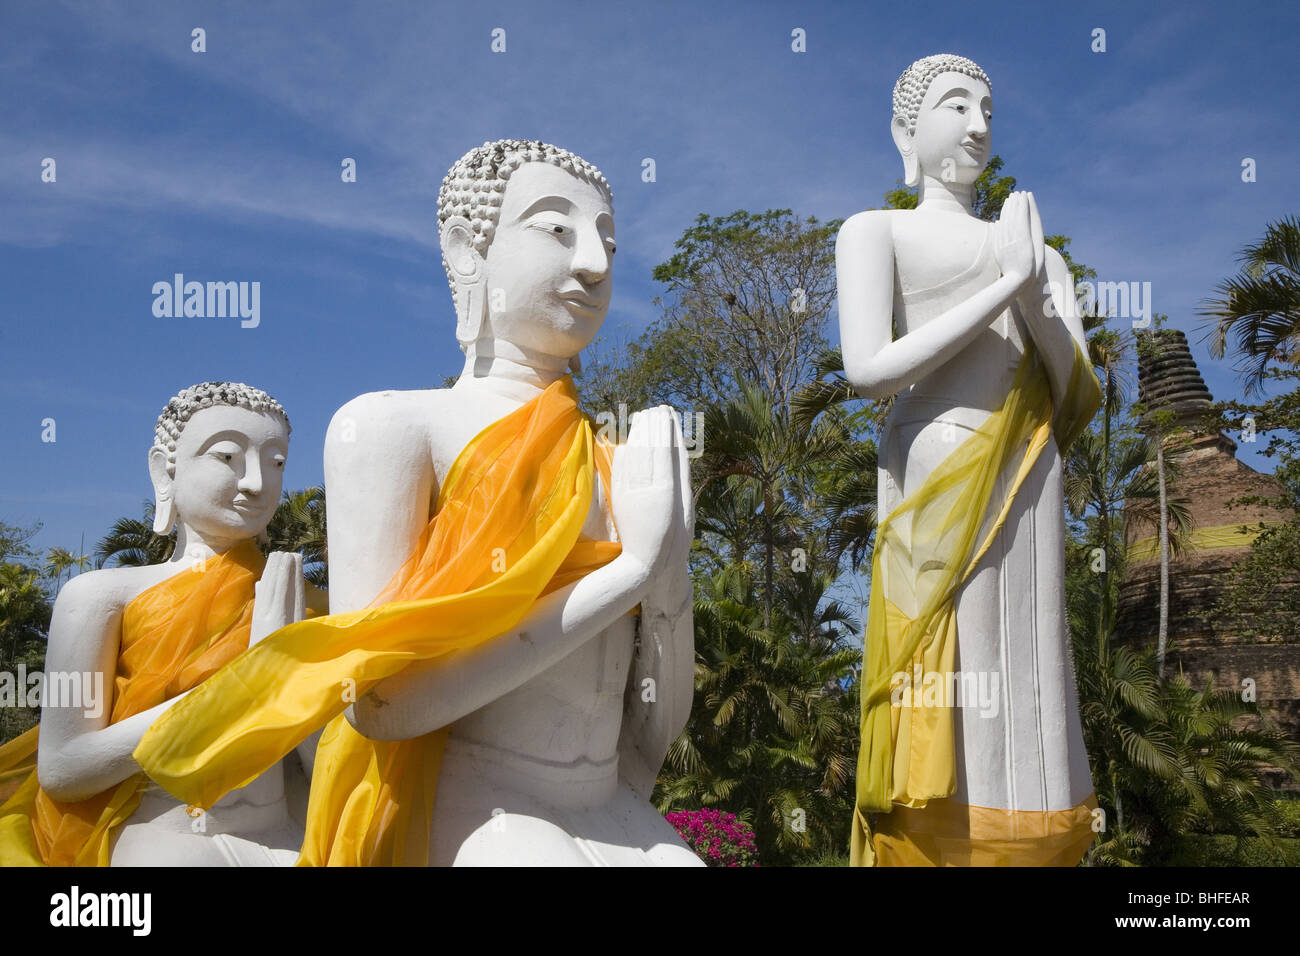 Buddha statues wearing monks' robes at Wat Yai Chai Mongkhon, Ayutthaya, Province Ayutthaya, Thailand, Asia Stock Photo